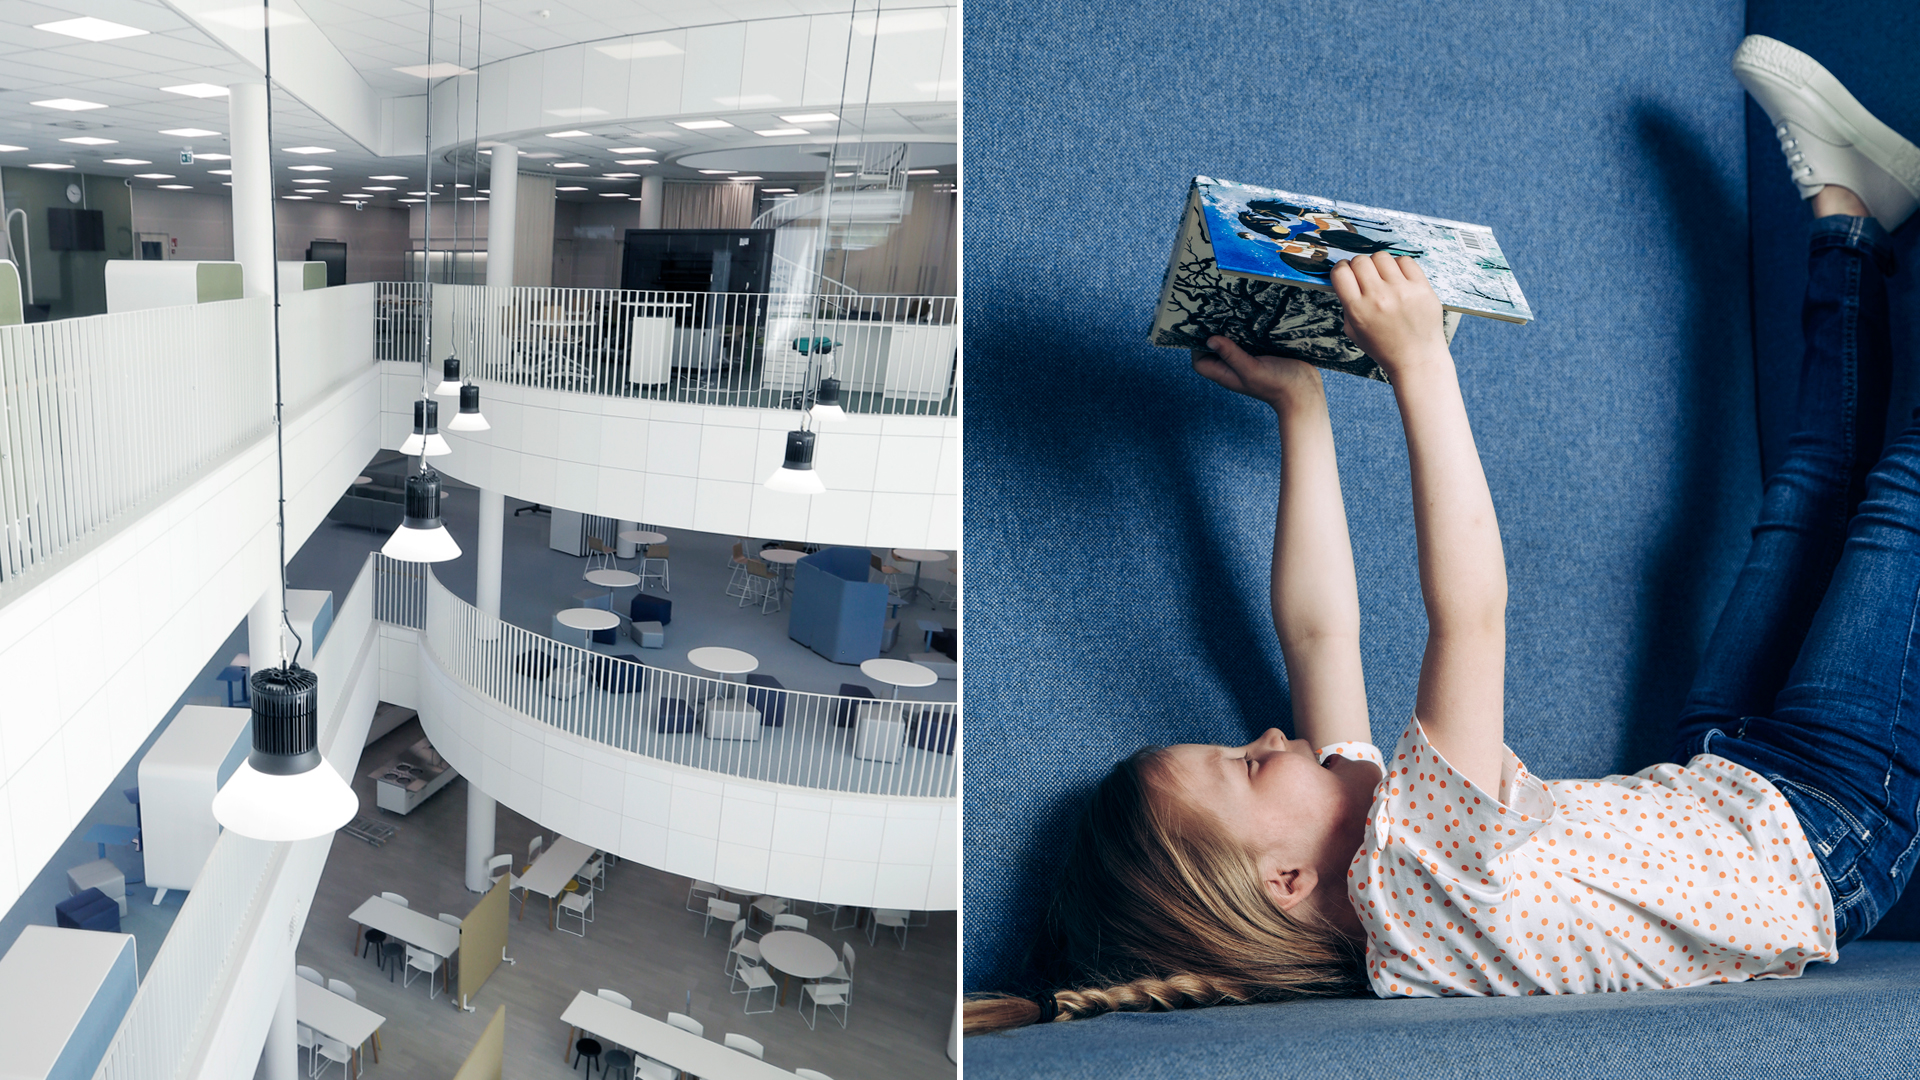 Kuvituskuvassa on kuvapari, jossa vasemmalla on sisäkuva kirjastosta ja oikealla kirjaa lukeva tyttö.